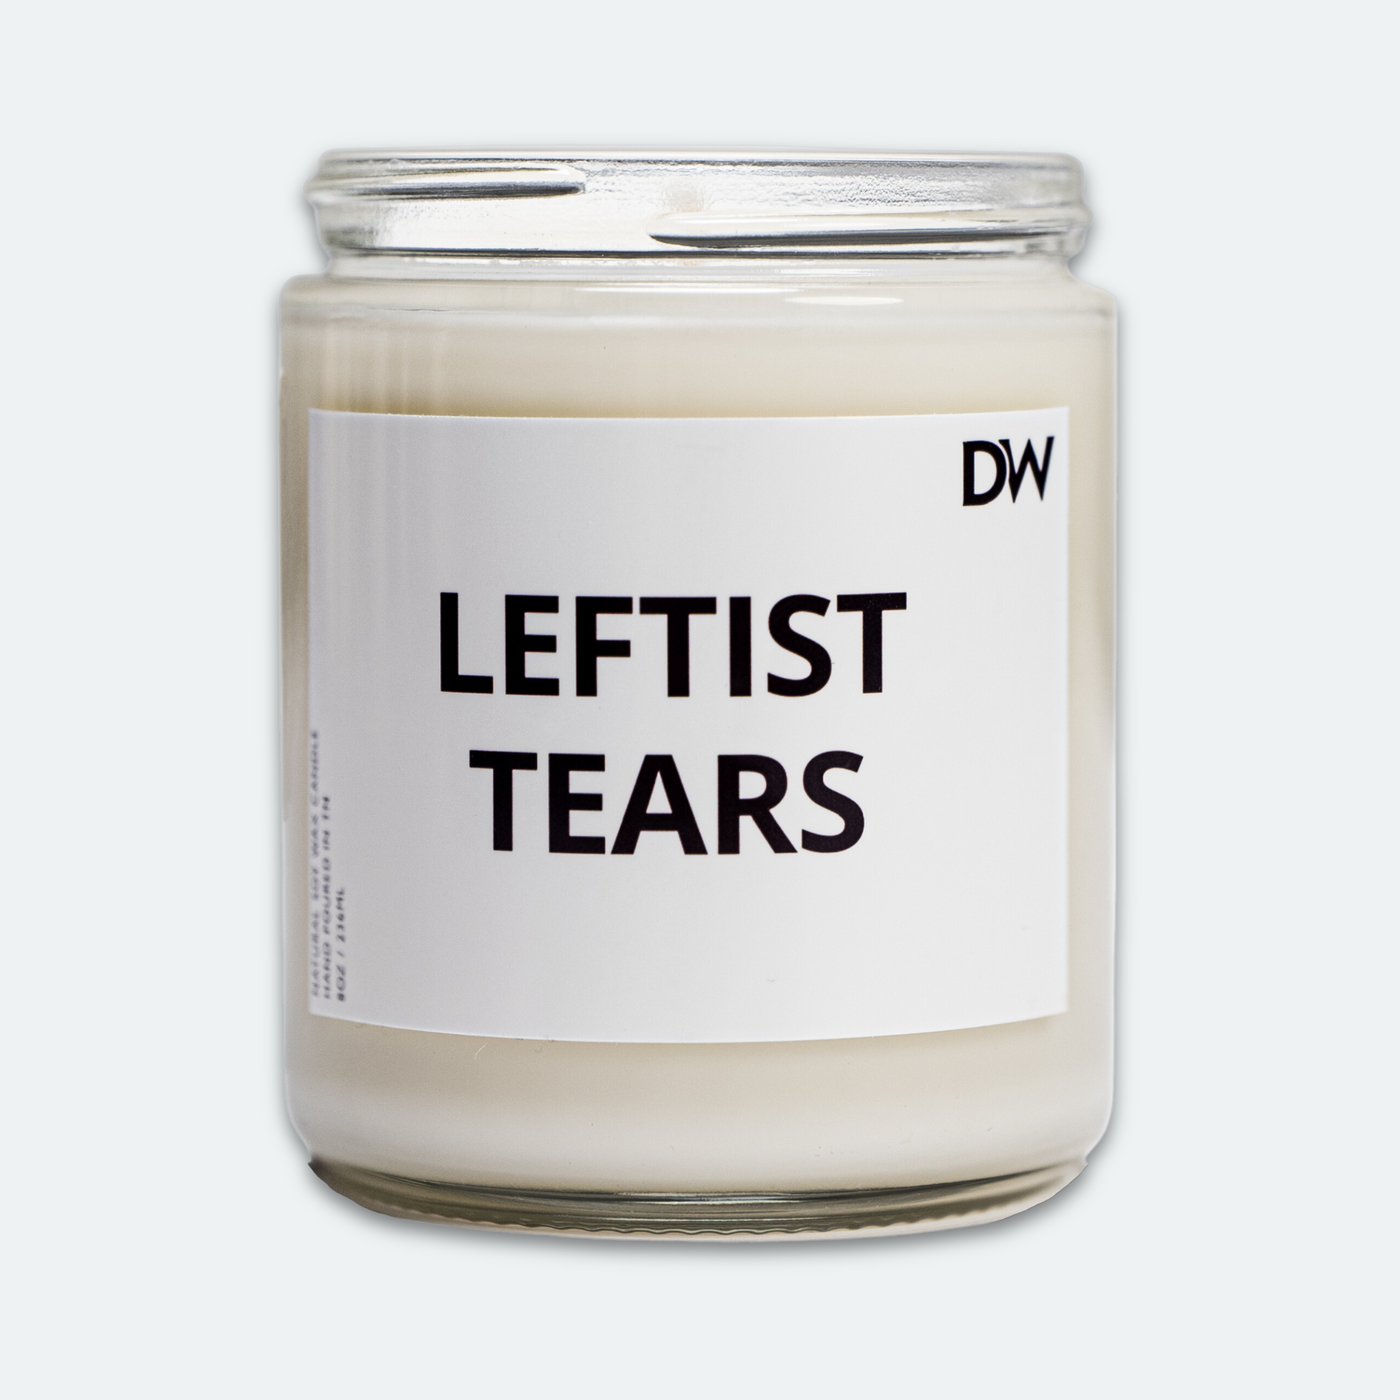 Leftist Tears Candle